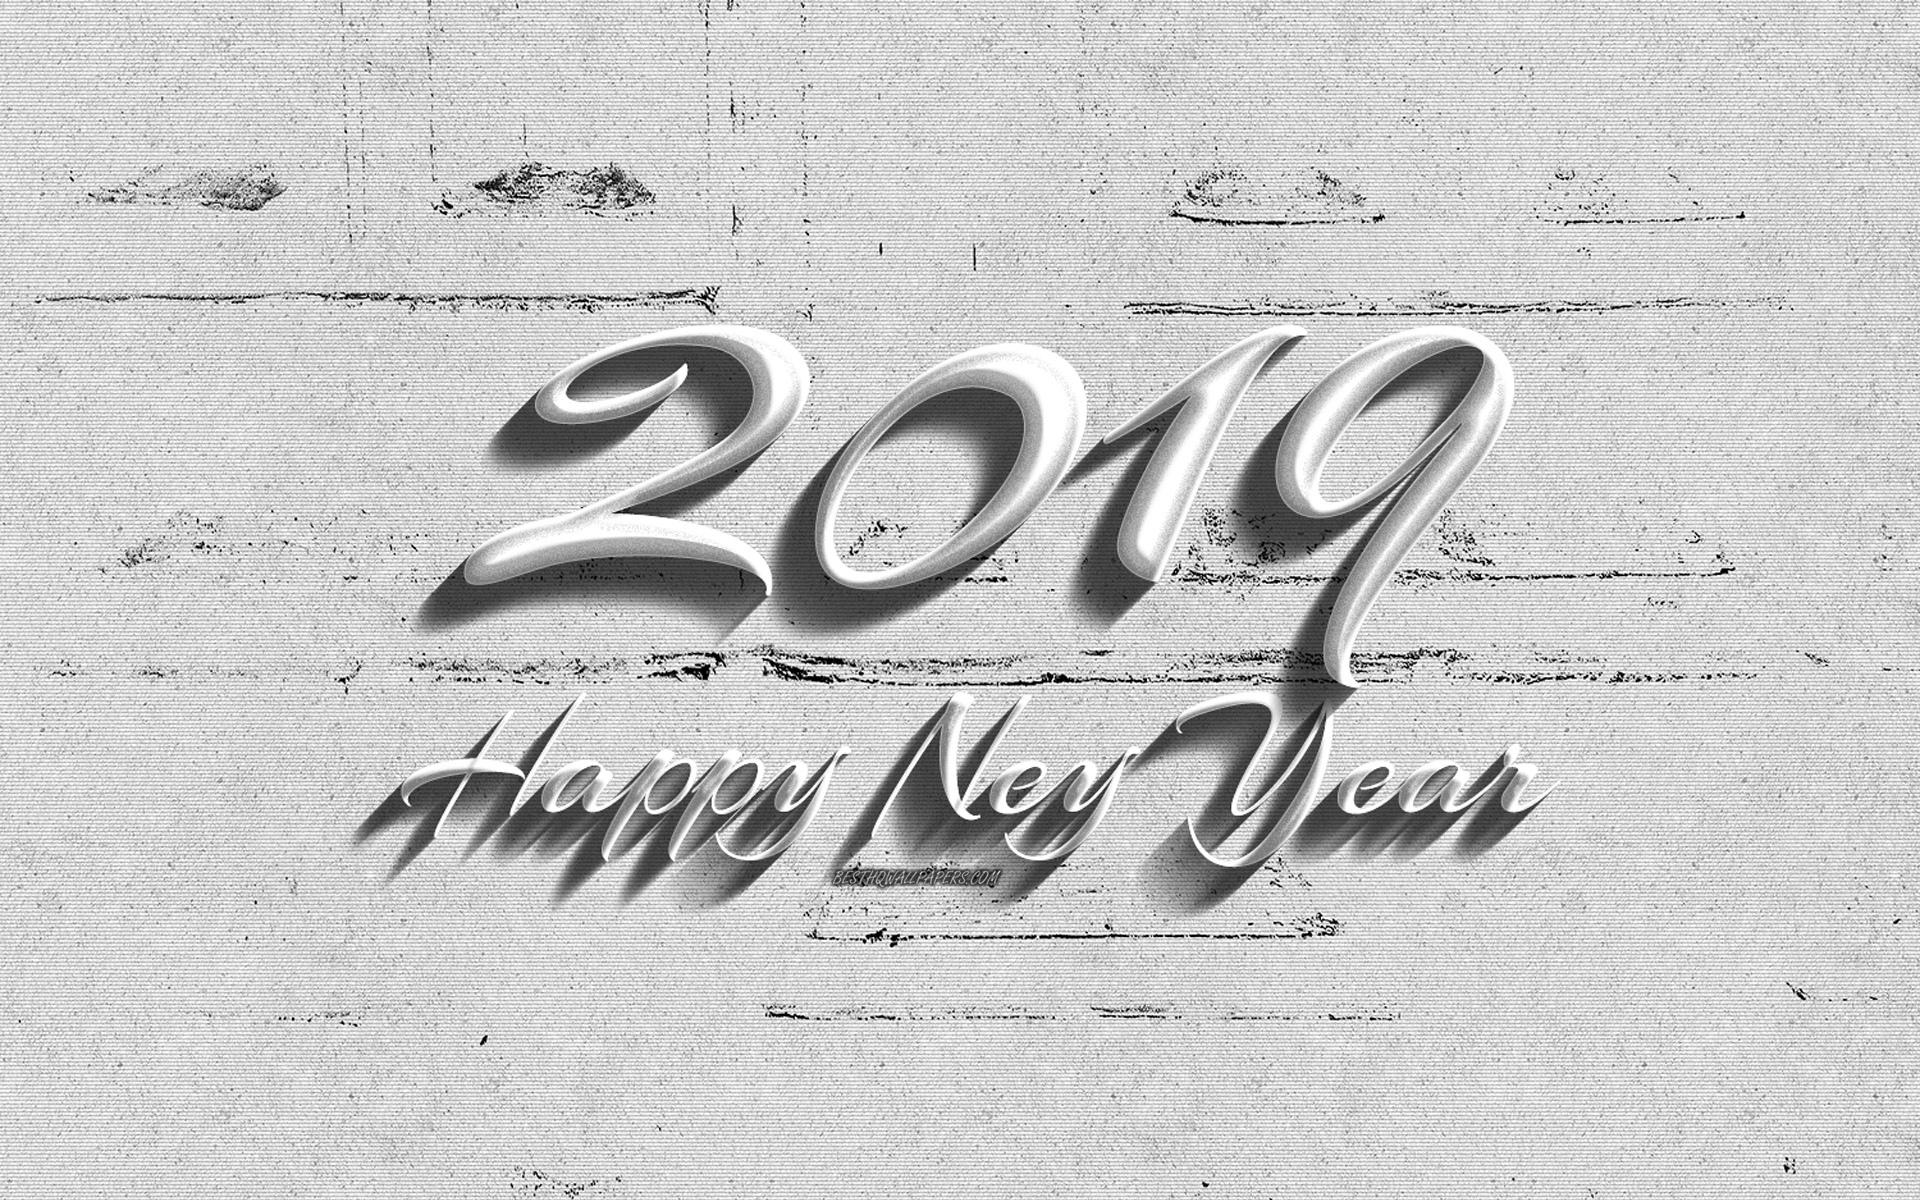 Descarga gratuita de fondo de pantalla para móvil de Año Nuevo, Día Festivo, Feliz Año Nuevo, Año Nuevo 2019.